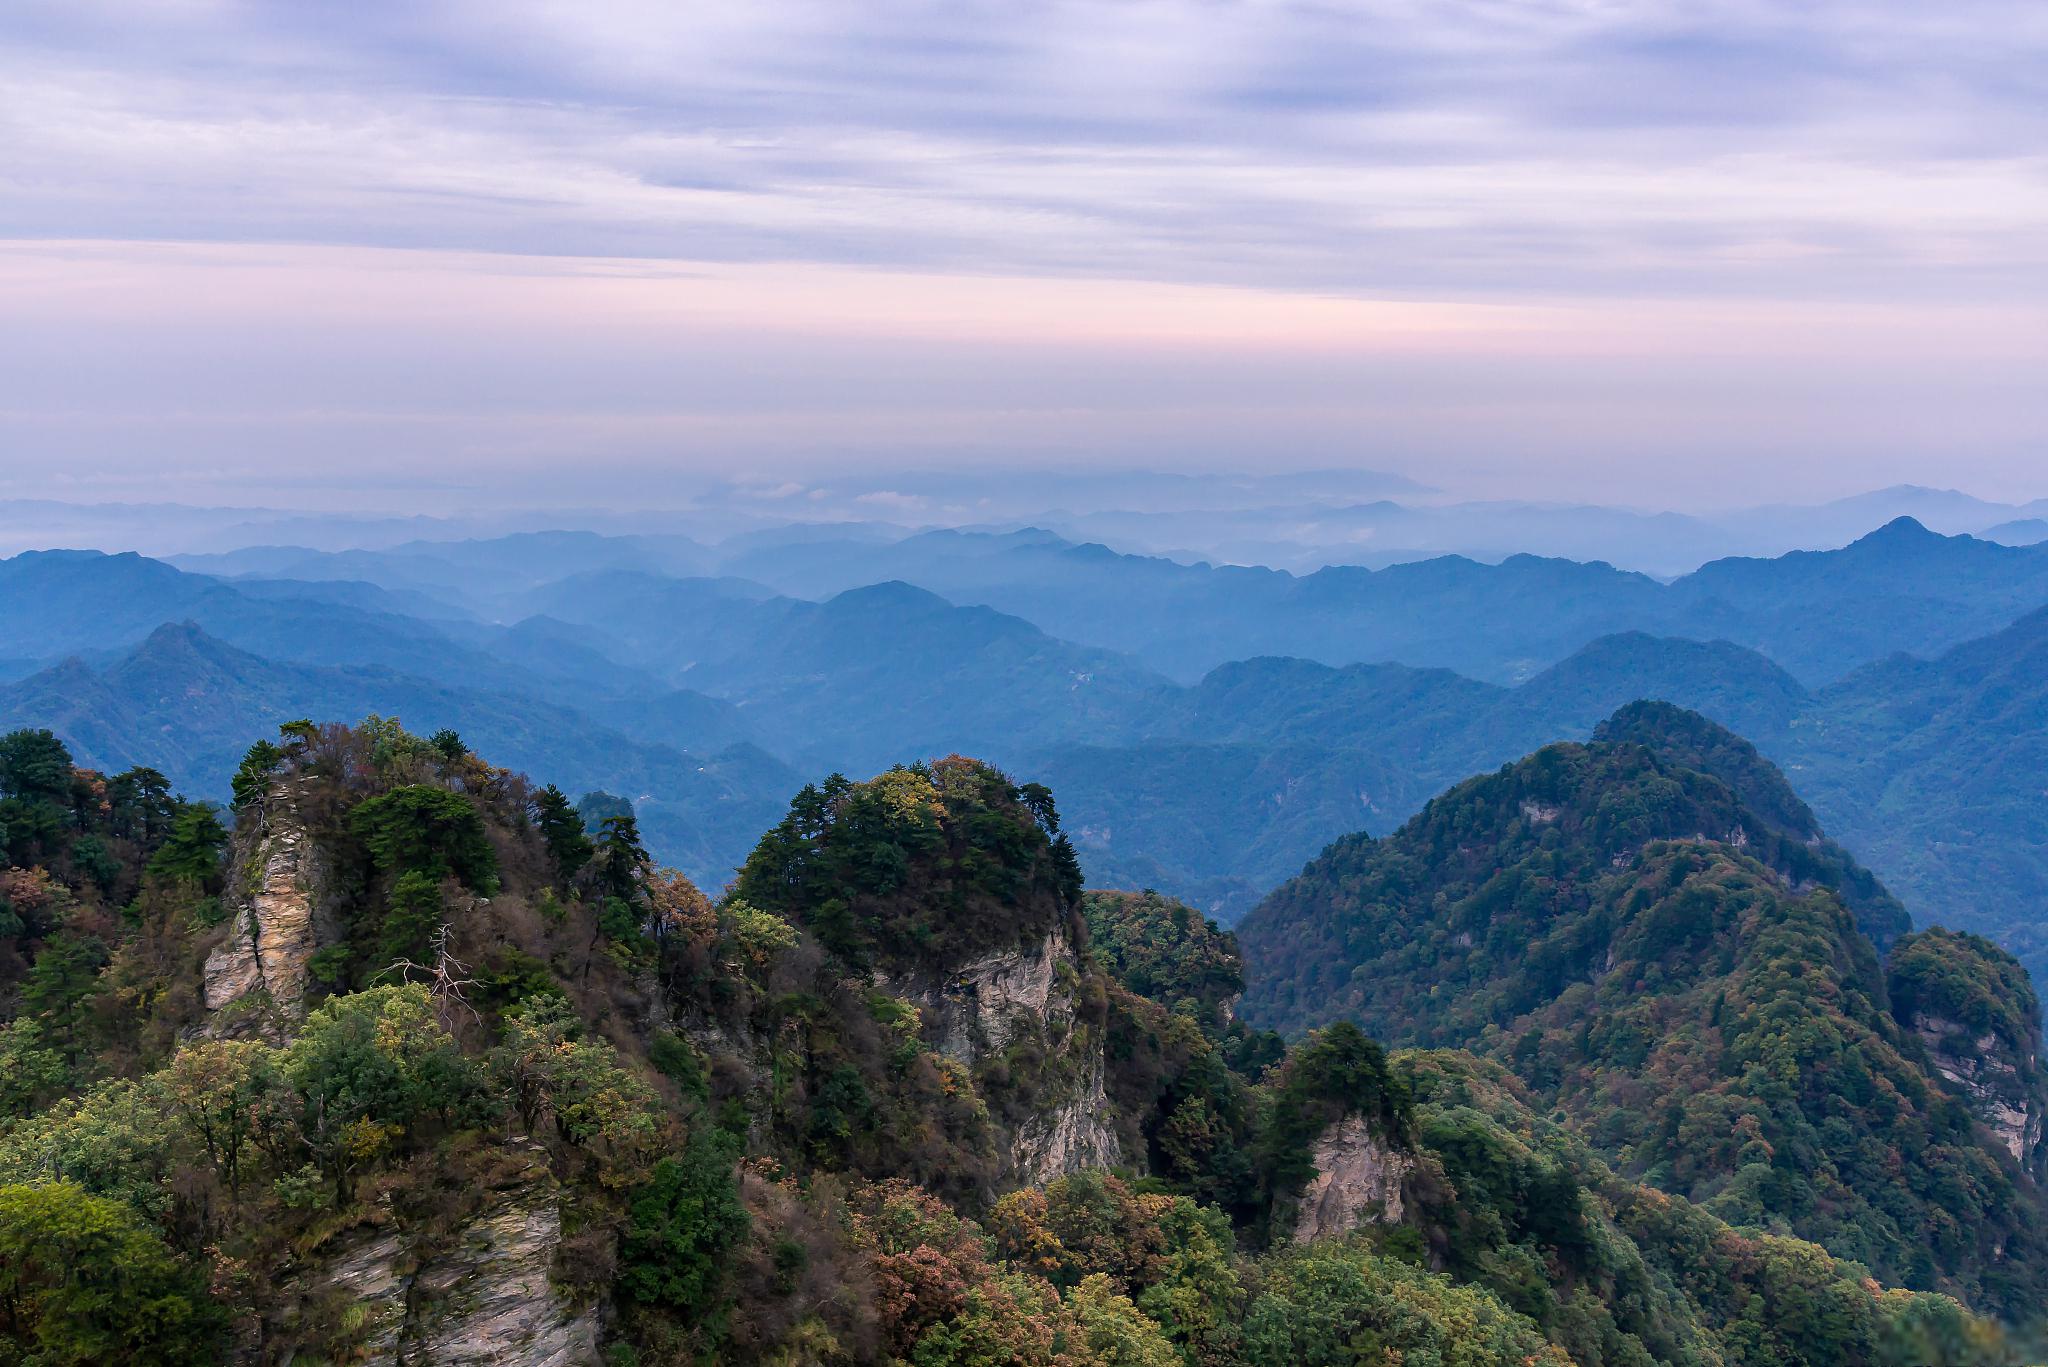 江山:探访自然风光与人文景观的理想之地 江山,一个历史悠久,文化底蕴